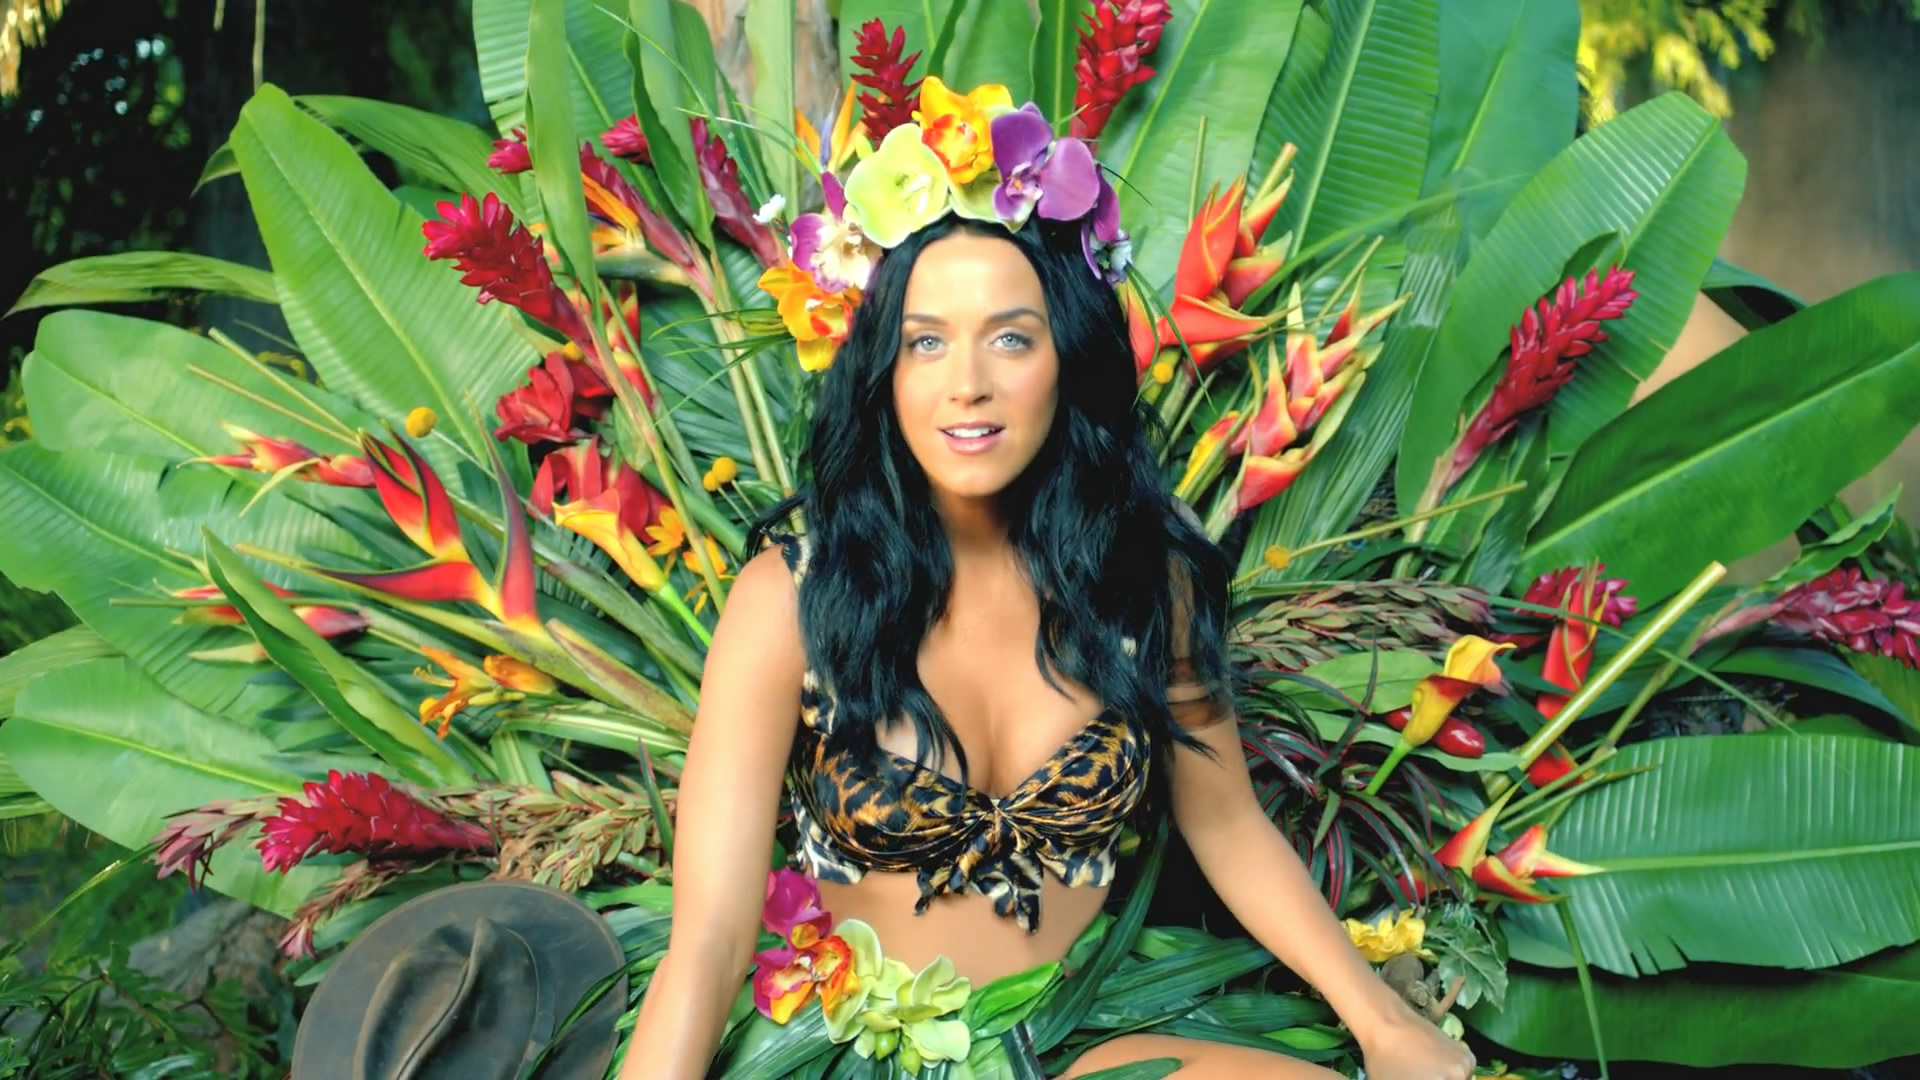 46+] Katy Perry Roar Wallpaper - WallpaperSafari